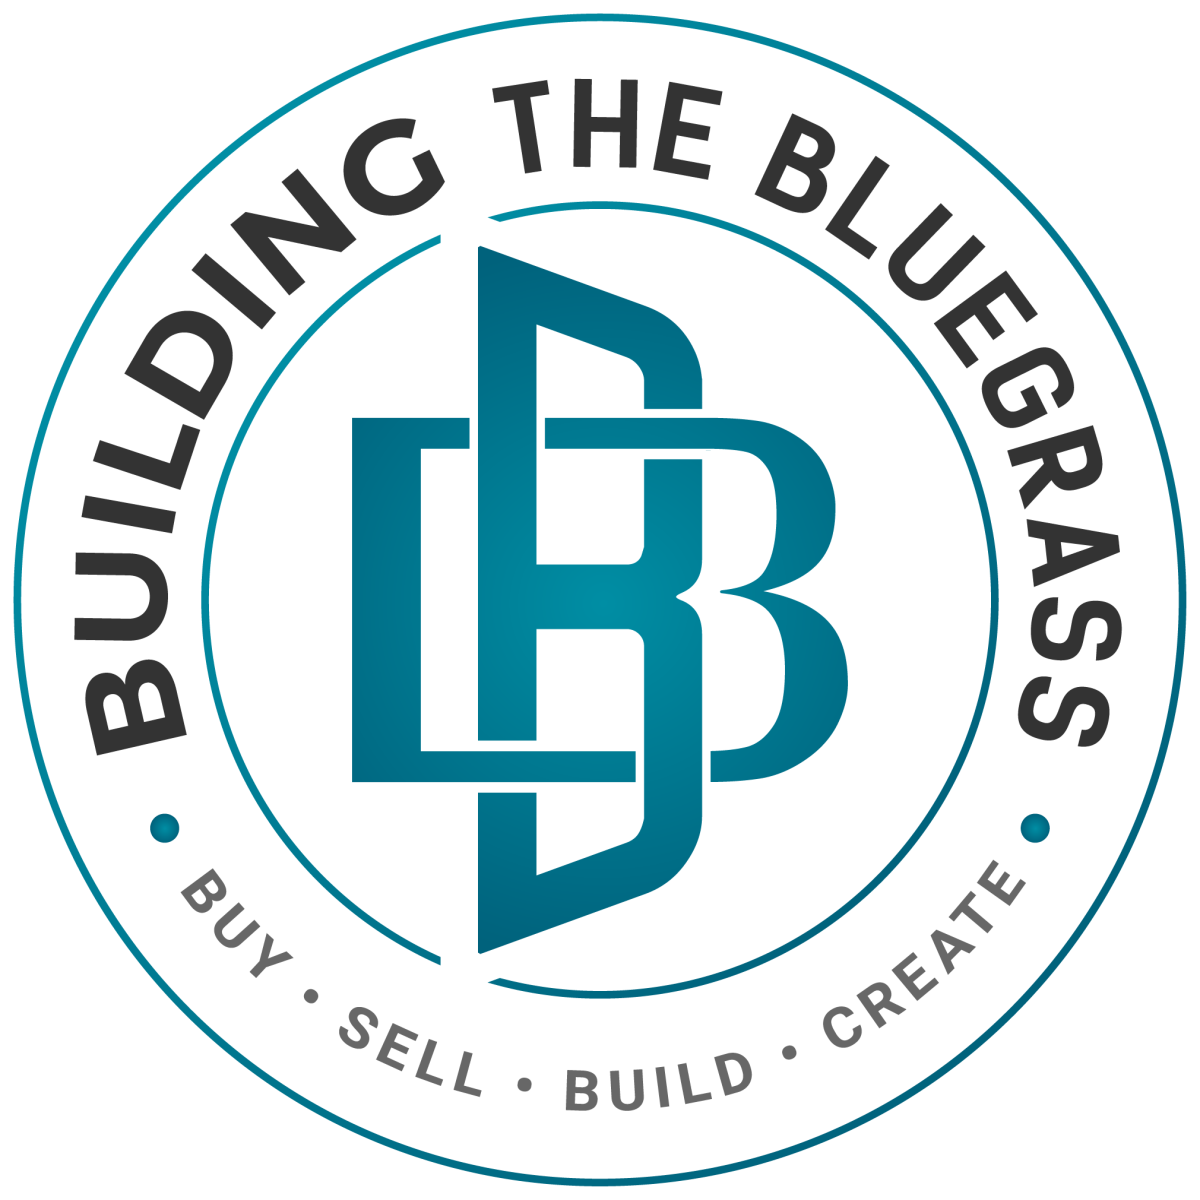 Building The Bluegrass